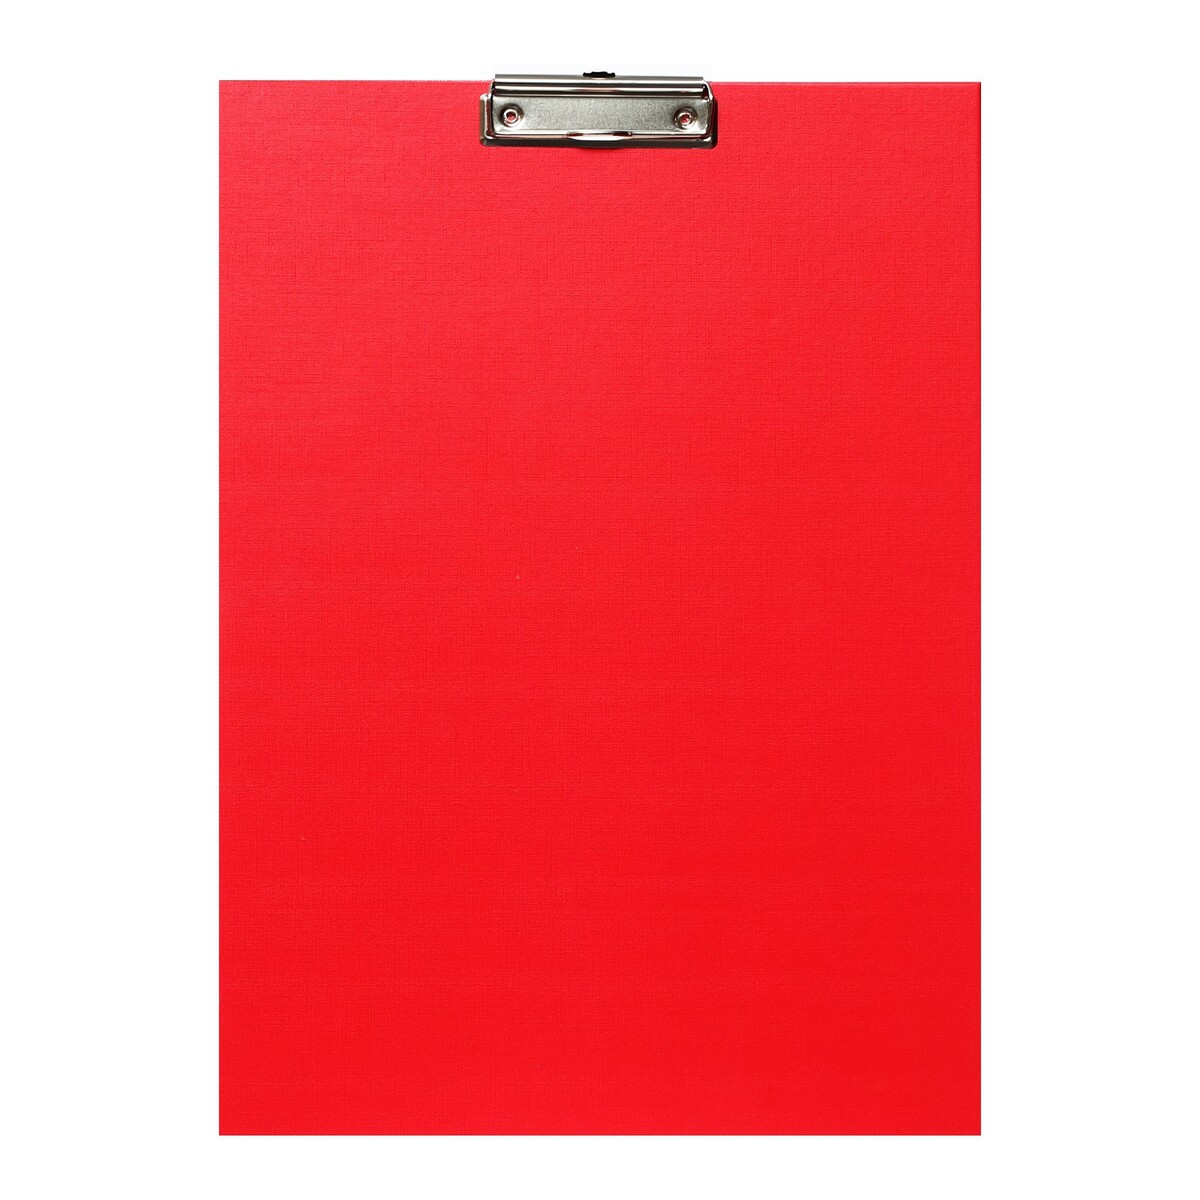 Планшет с зажимом а3, 420 x 320 мм, покрыт высококачественным бумвинилом, красный (клипборд) планшет с зажимом а4 2 мм calligrata прочный картон бумвинил синий клипборд